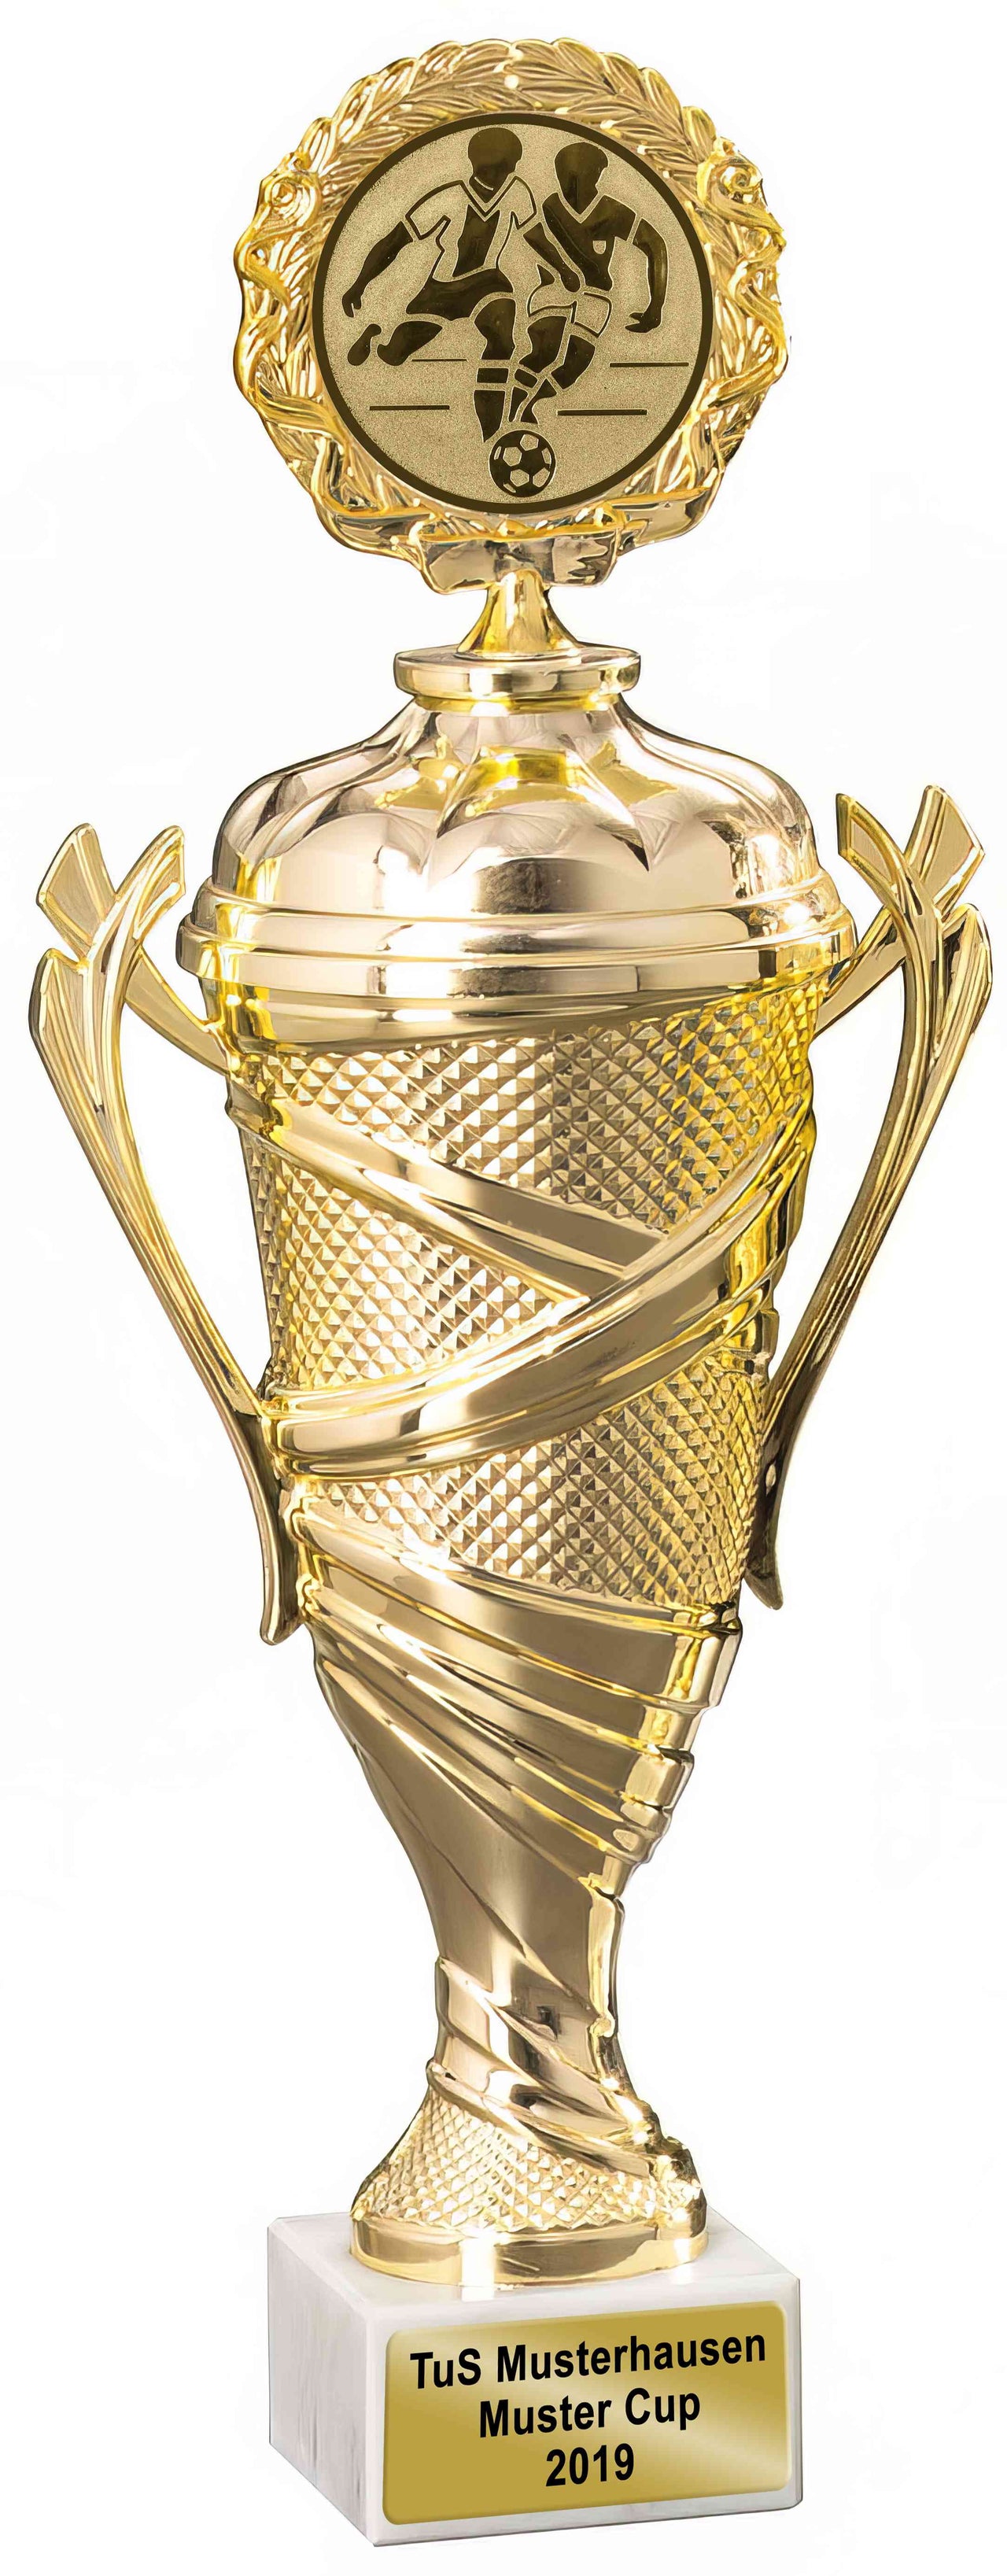 Goldener Pokal mit einem kreisförmigen, erhaltenen Emblem oben, dekorativen Griffen und einem gravierten Etikett "tus Musterhausen München" 4-er Pokalserie 233 mm - 302 mm PK754980-4-E50